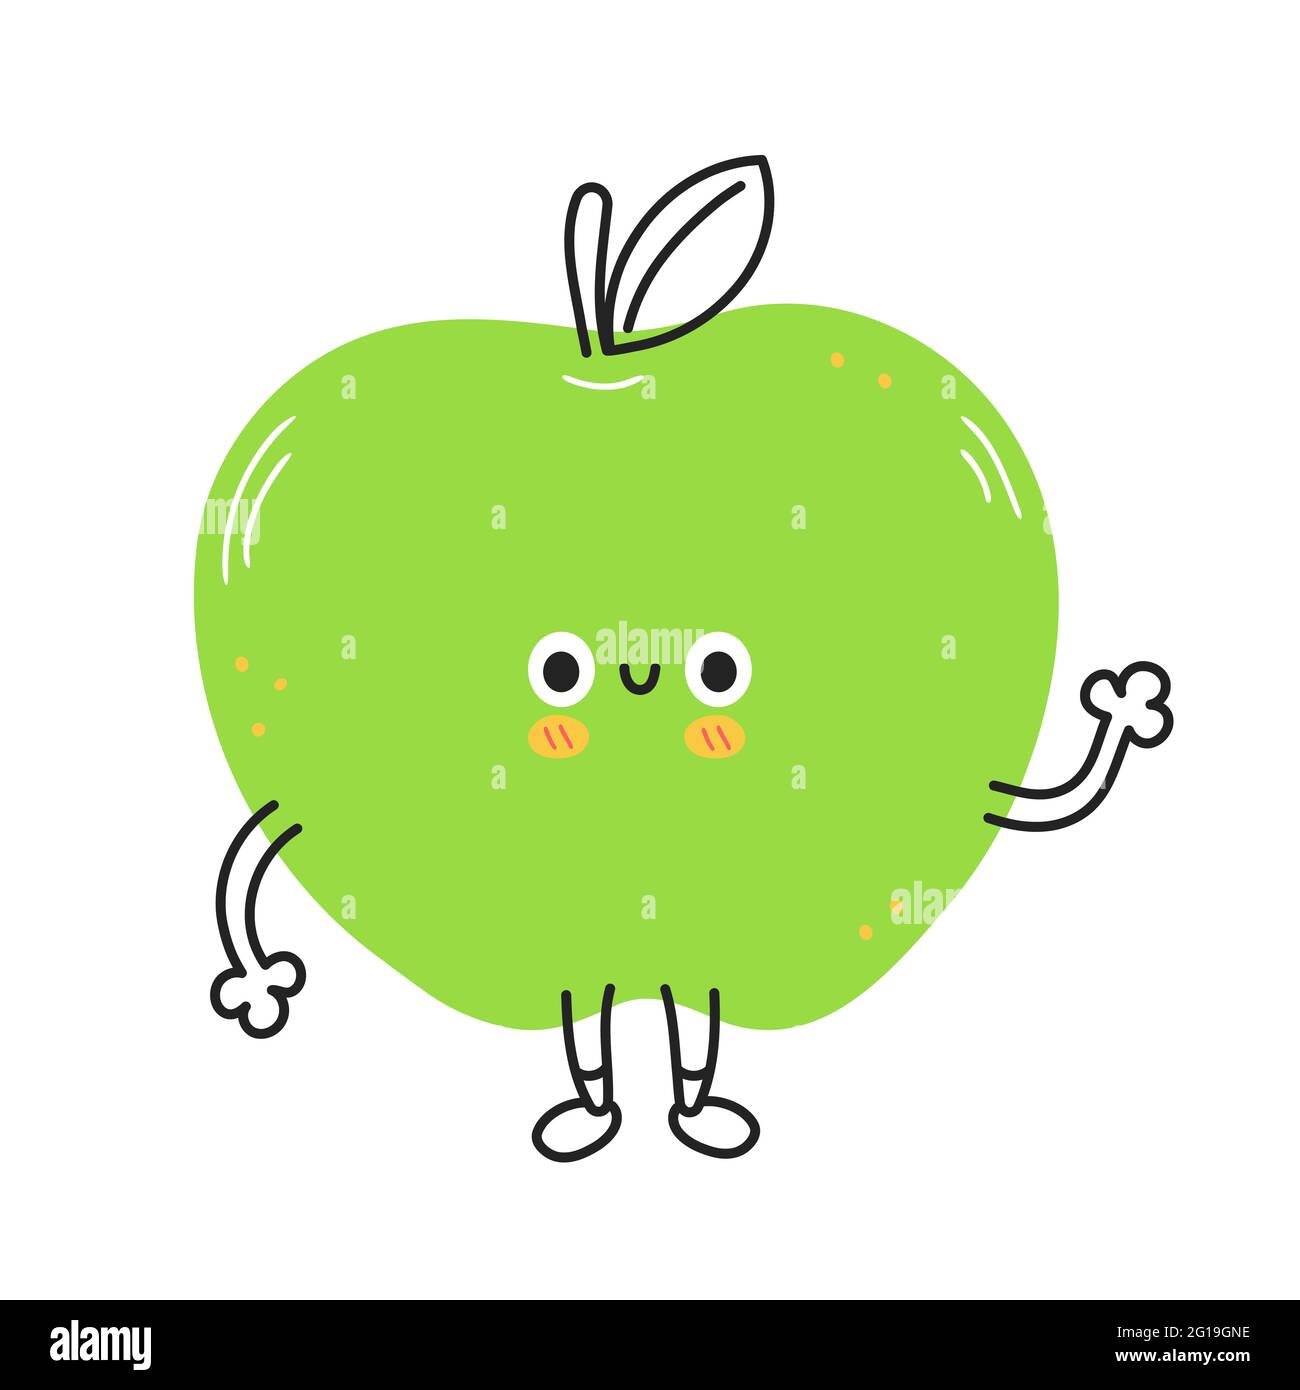 Fruta divertida de manzana. Vector dibujo a mano dibujo de dibujos animados  kawaii icono de la ilustración del carácter de fideos. Manzana fruta bebé  mascota concepto de carácter de dibujos animados. Aislado